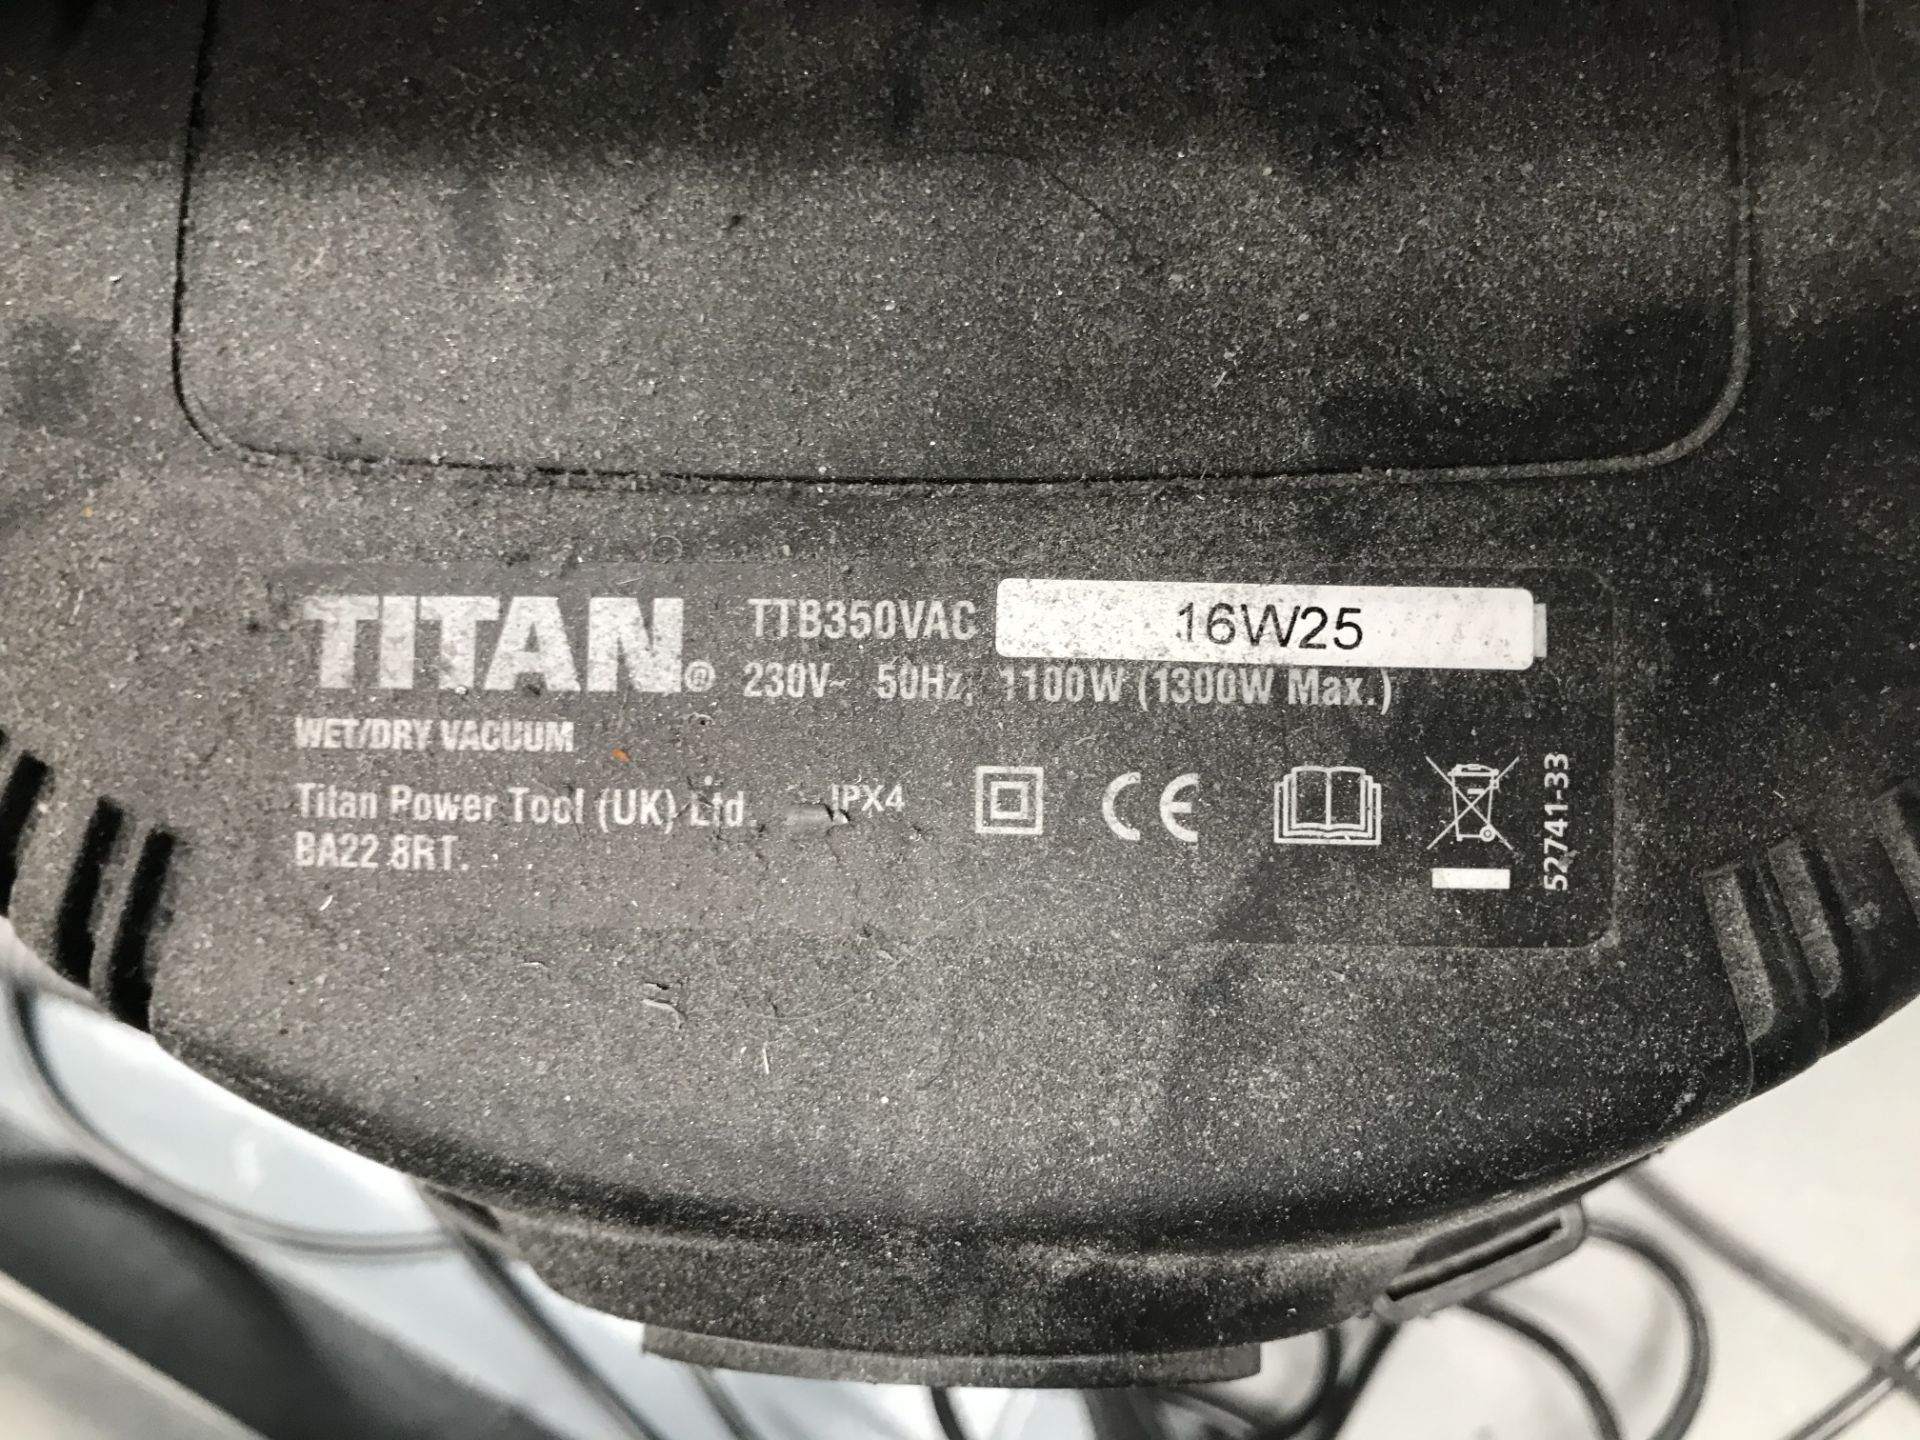 Titan TTB350VAC Wet/Dry Cylinder Vacuum - Image 2 of 2